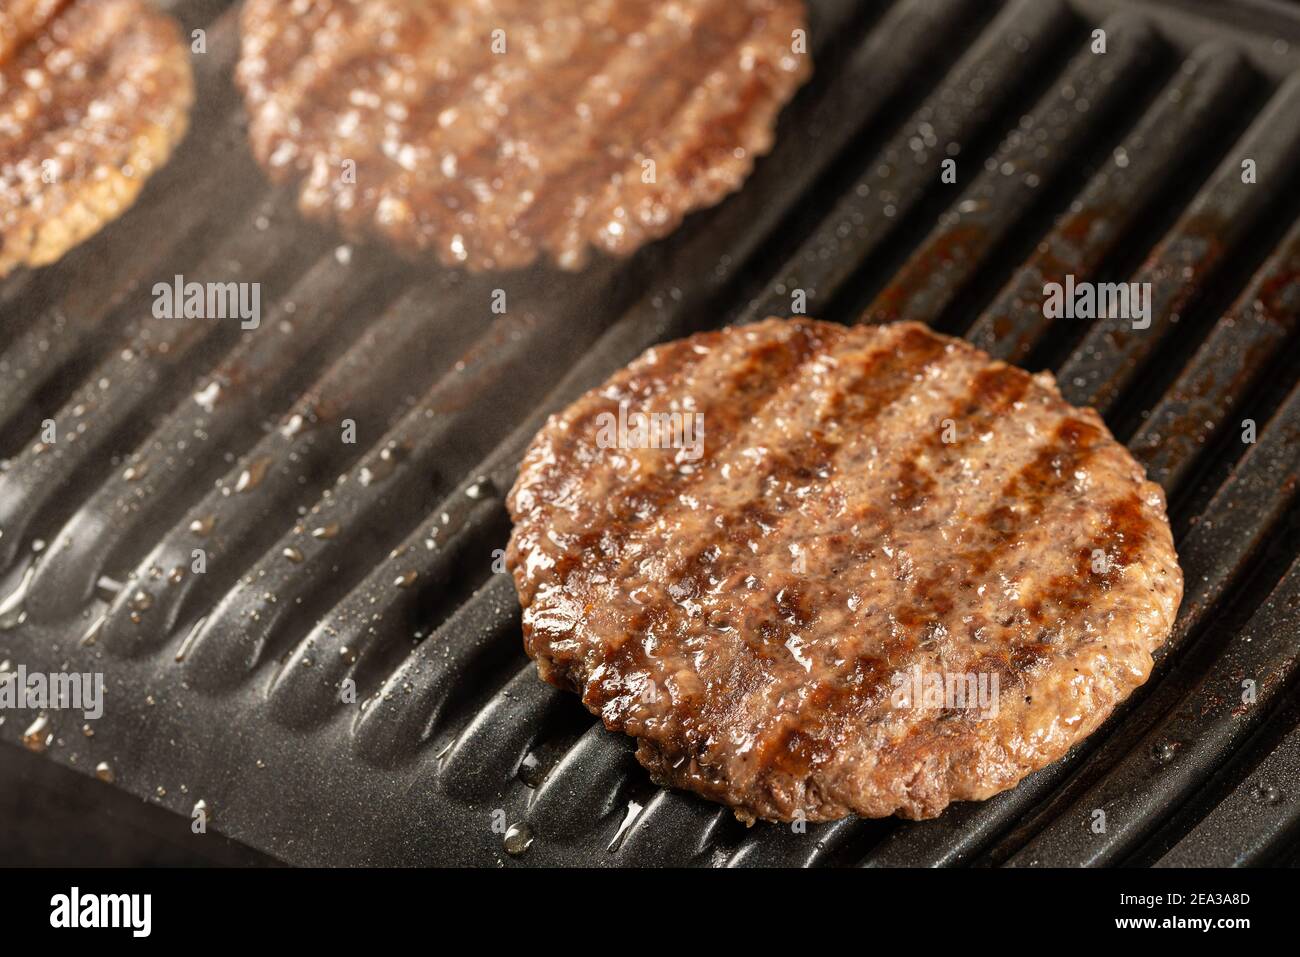 Côtelettes de bœuf frais sur un gril. Cuisiner un hamburger à la maison. Concept de nourriture délicieuse et saine Banque D'Images